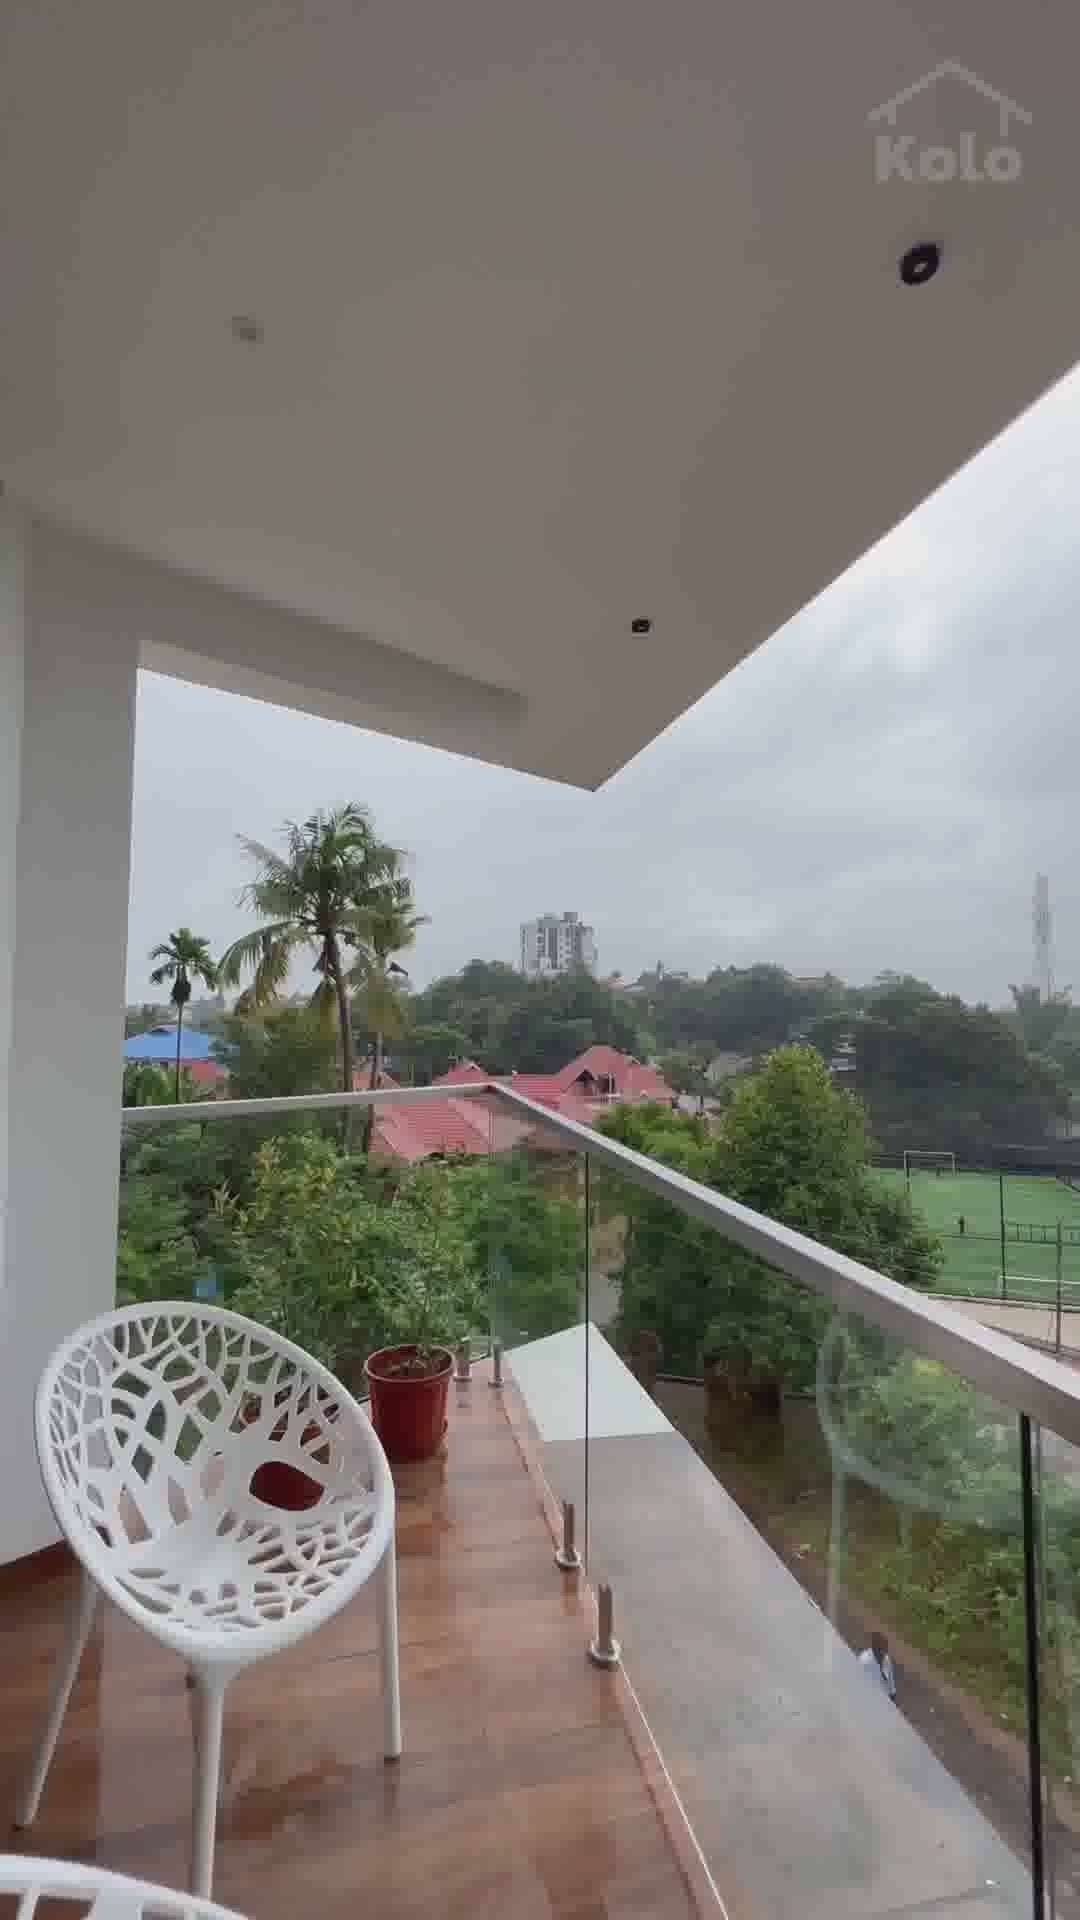 3 സെന്റിൽ മൾട്ടി ലെവൽ വീട് | N'Arrow

Multi level 4 Bedroom House in 3 cents

Project name: 𝐓𝐡𝐞 𝐍'𝐀𝐫𝐫𝐨𝐰
Category: Residential

Client: Mr. Abhilash & Family
Site Area: 2.9 Cents
Area: 2400 Sqft
Year of Completion: 2022
Location: Kangarappady, Kalamassery

Lead Architects: Mithun O Raghavan, Meghna Anilkumar
DesignLOOM
@designloom.architects
+91 94951 81756

Videography: ArchPro
@archpro.productions

നിങ്ങളുടെ മനോഹരമായ വീടുകൾ, വീട് നിർമാണവുമായി ബന്ധപ്പെട്ട് നിങ്ങളുടെ സർവീസുകളും, വർക്കുകളും തുടങ്ങിയവ ഫീച്ചർ ചെയ്യാൻ ബന്ധപ്പെടുക:
+91 9895780610

Kolo - India’s Largest Home Construction Community :house:

#hometours #keralavibes #tharavad #home #huilekerehouseproject #traditionaldesign #kerala #koloapp #keralagram #reelitfeelit #keralagodsowncountry #homedecor